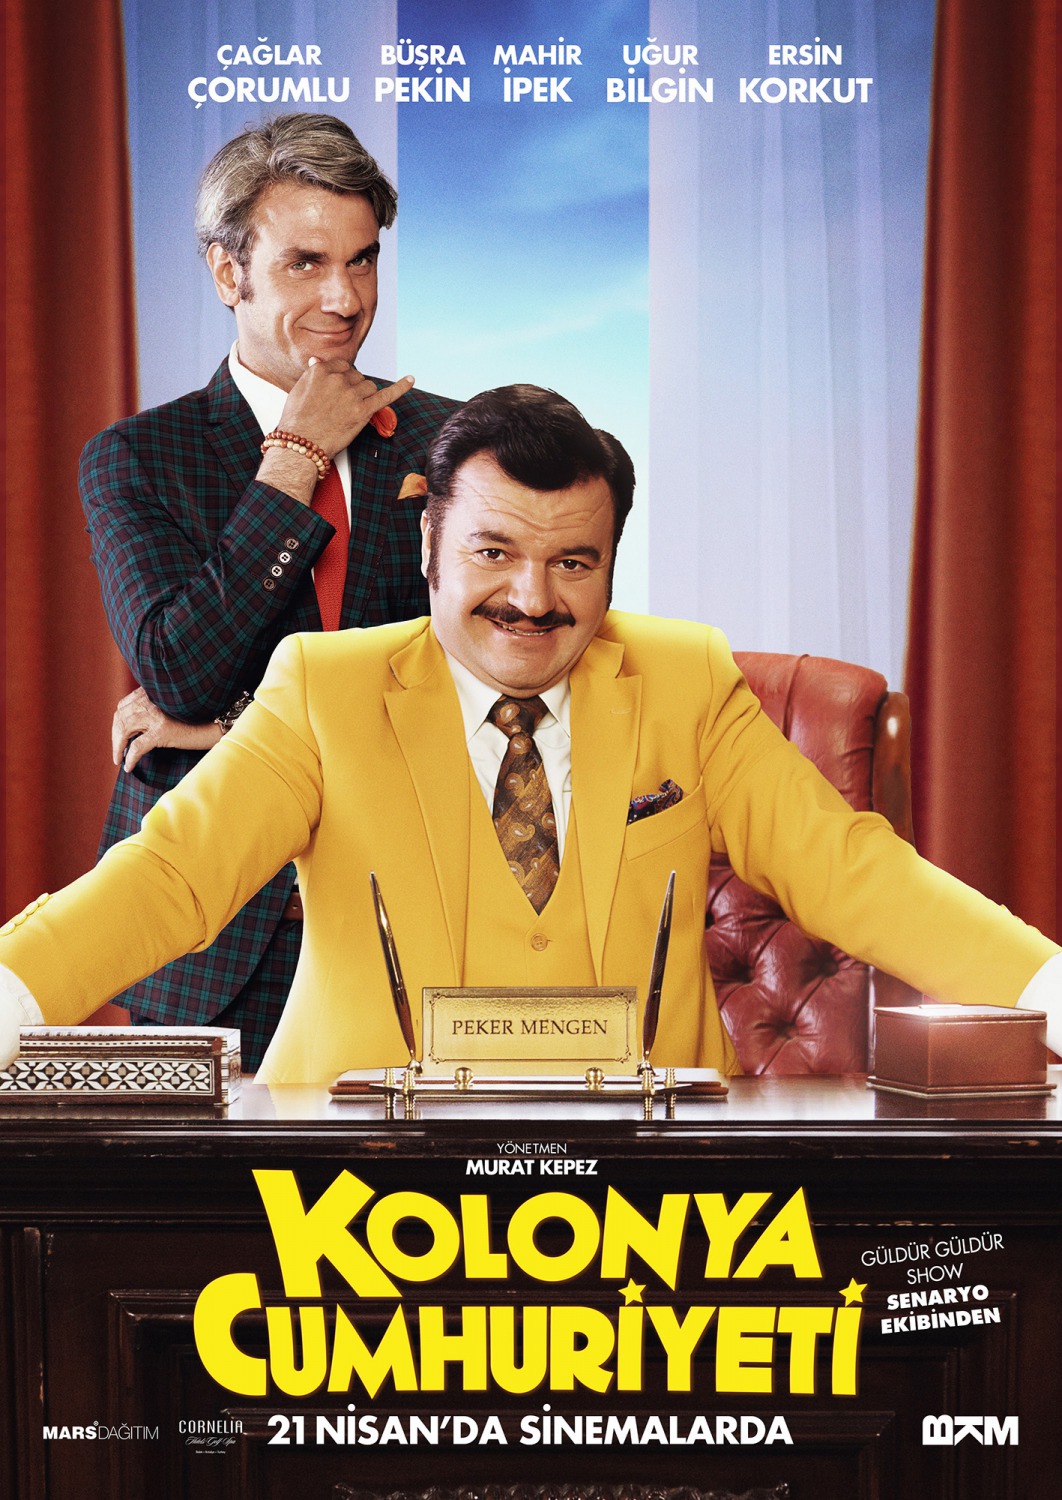 Extra Large Movie Poster Image for Kolonya Cumhuriyeti (#5 of 7)